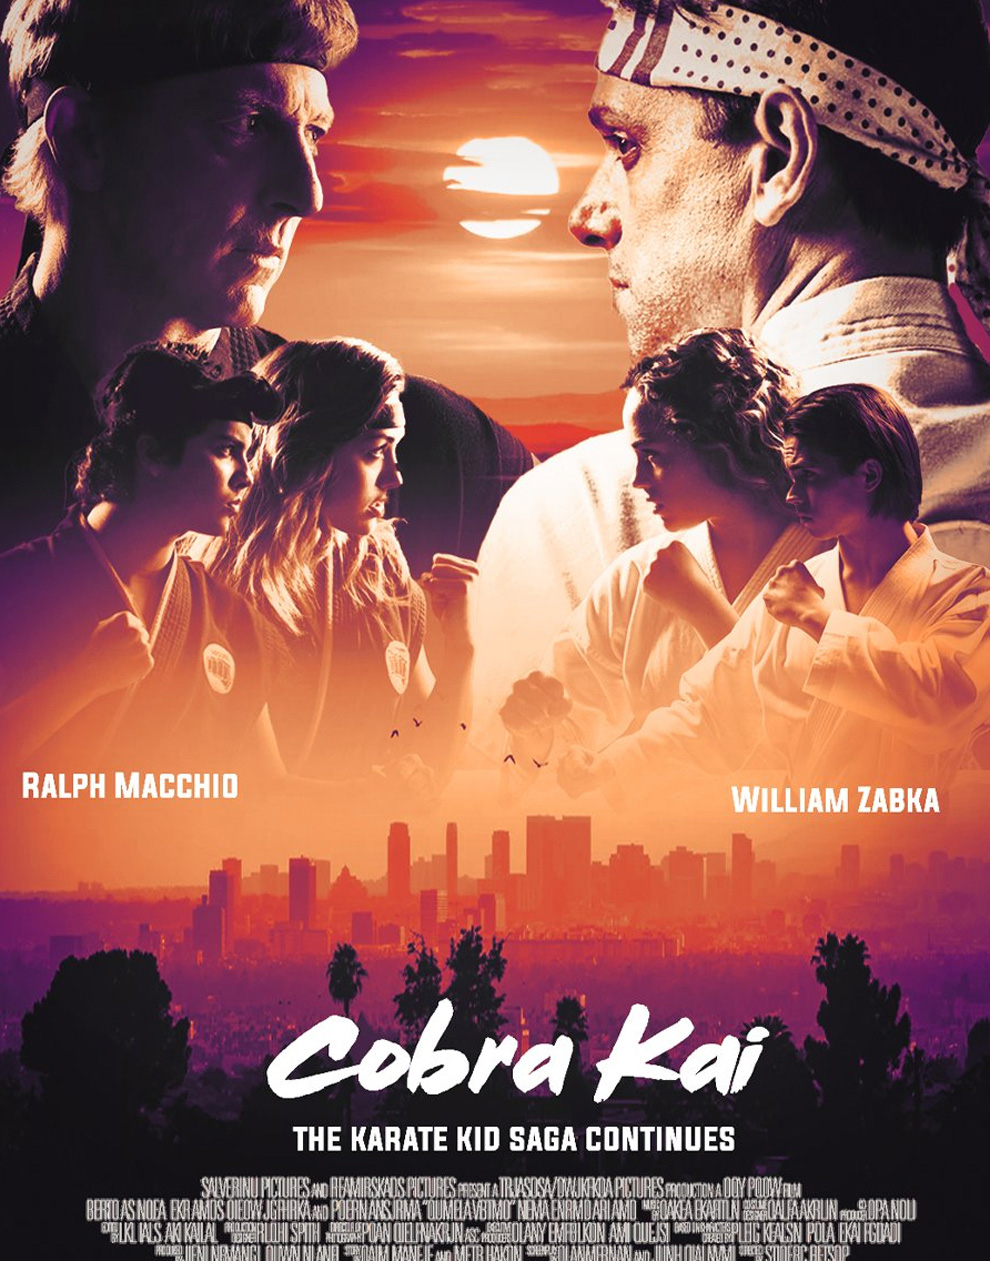 Cobra kai 2